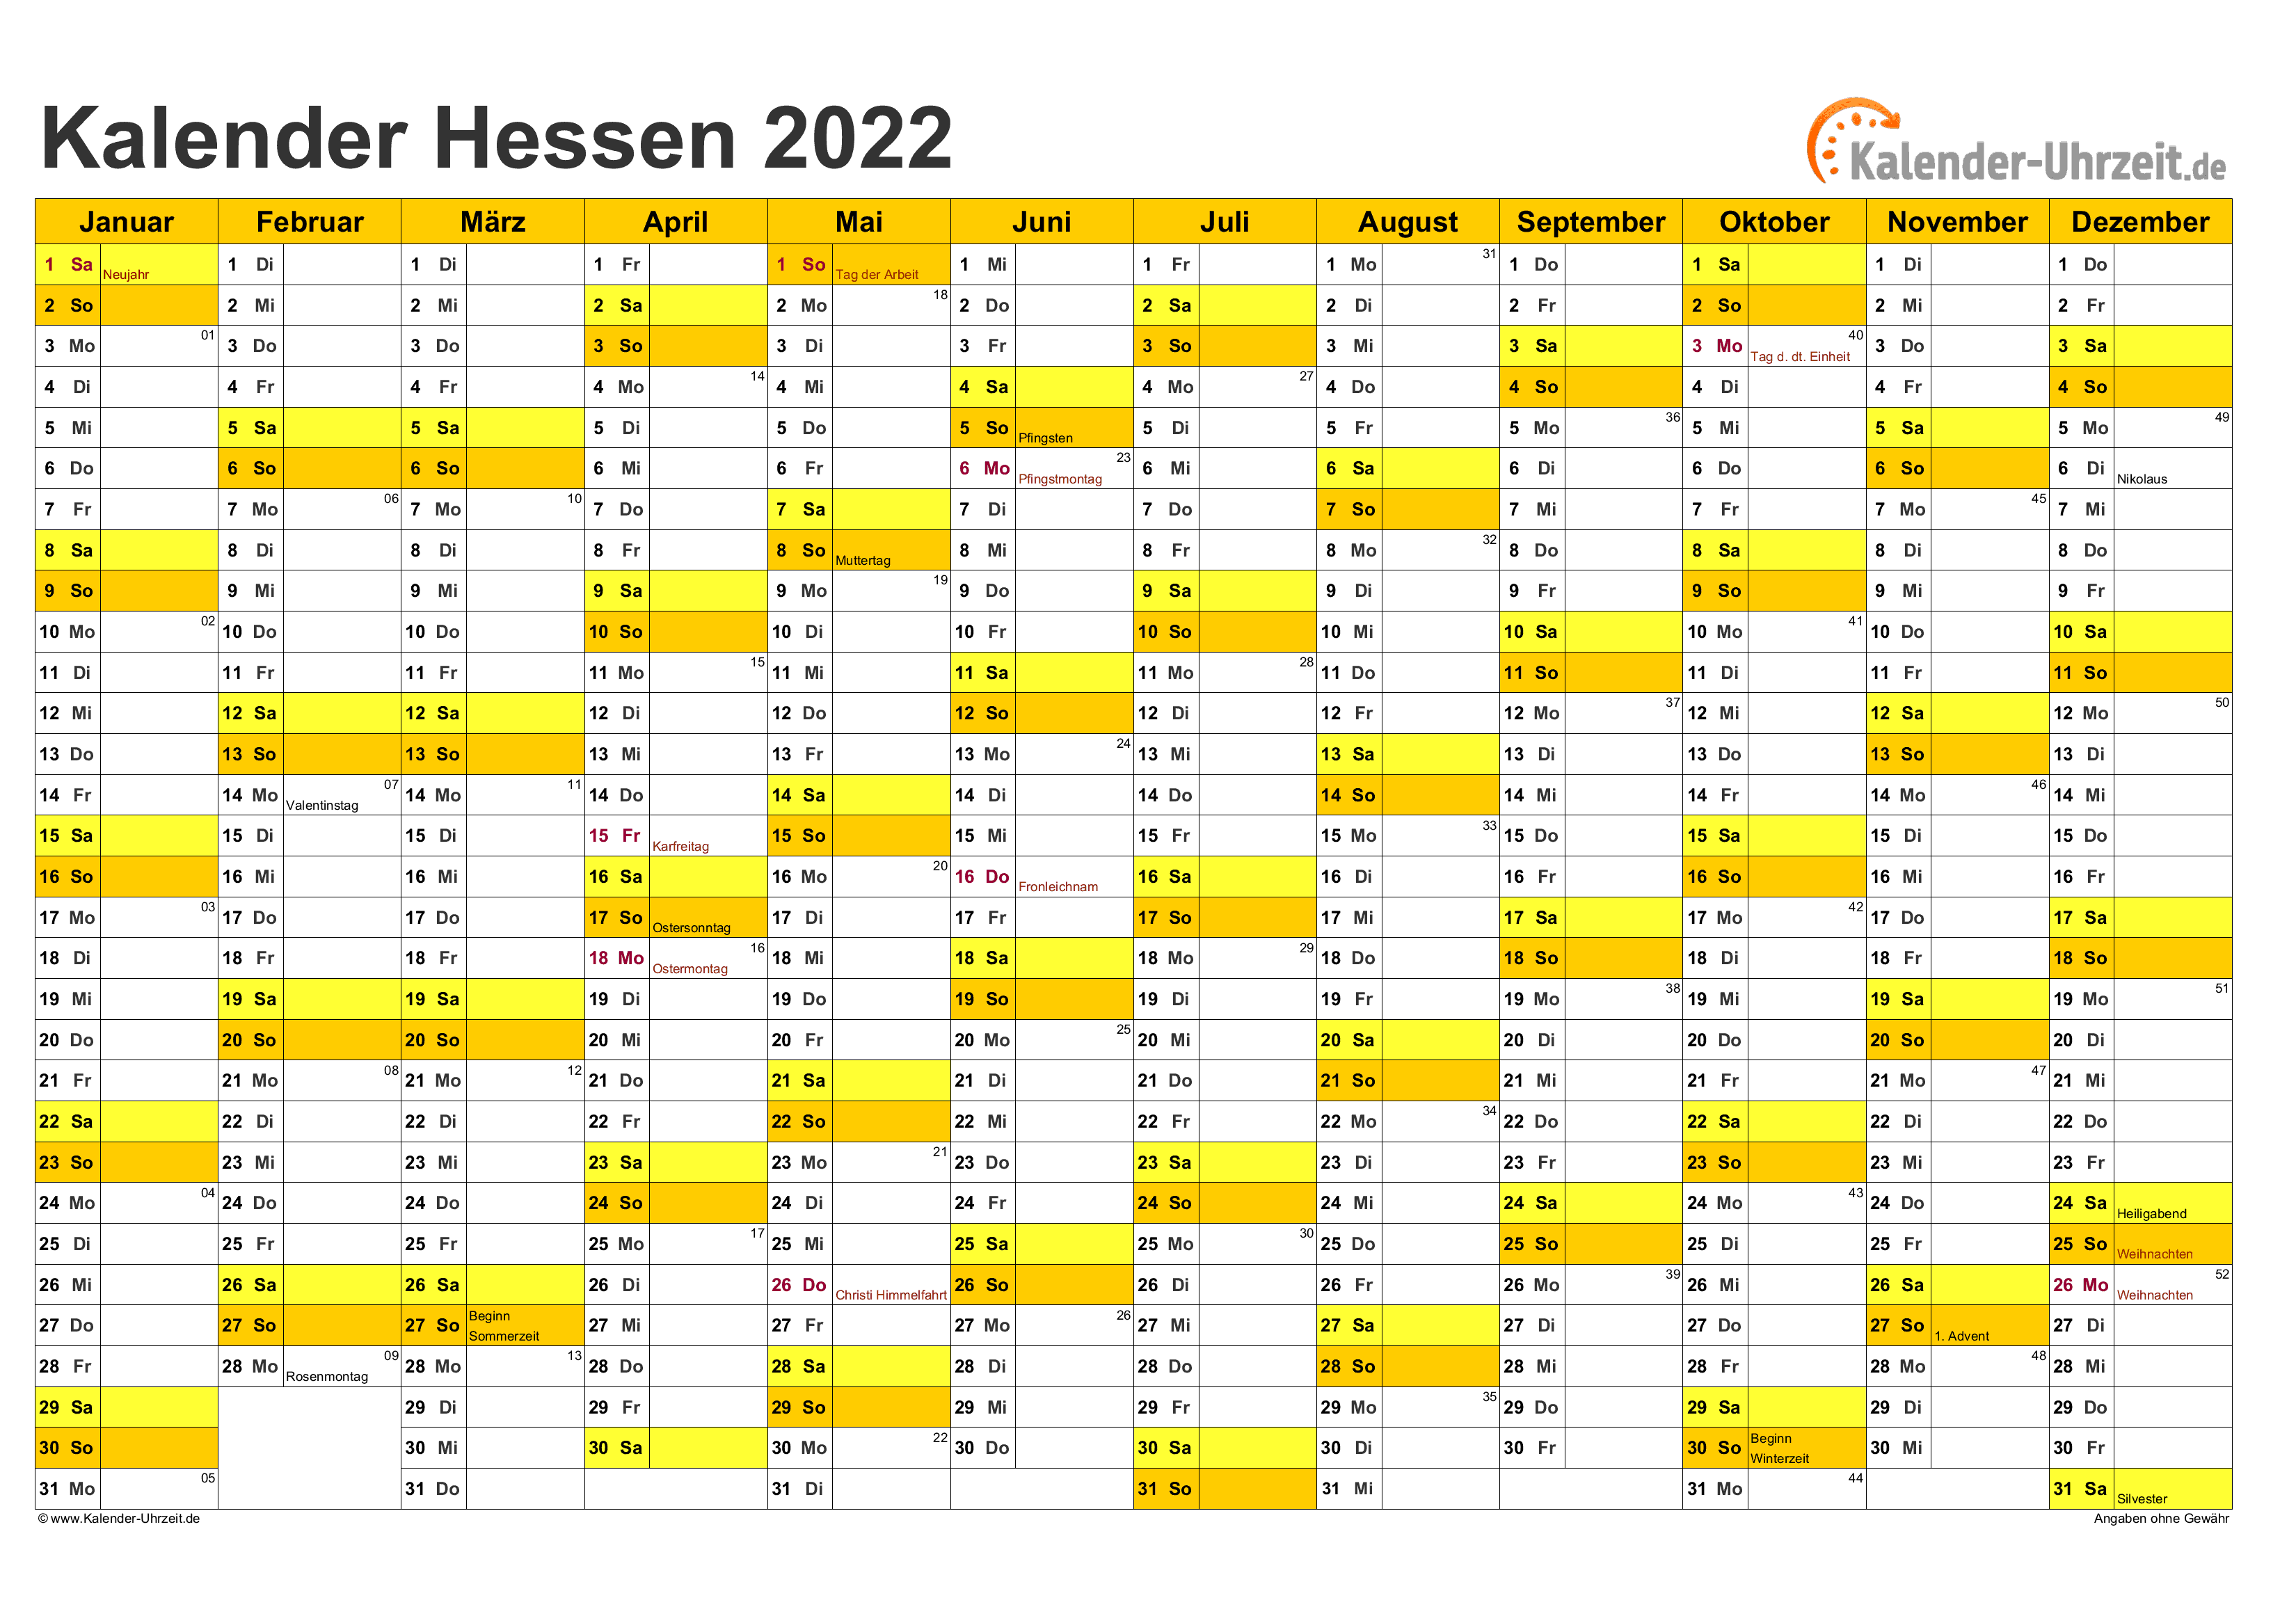 Hessen Kalender 2022 mit Feiertagen - quer-einseitig